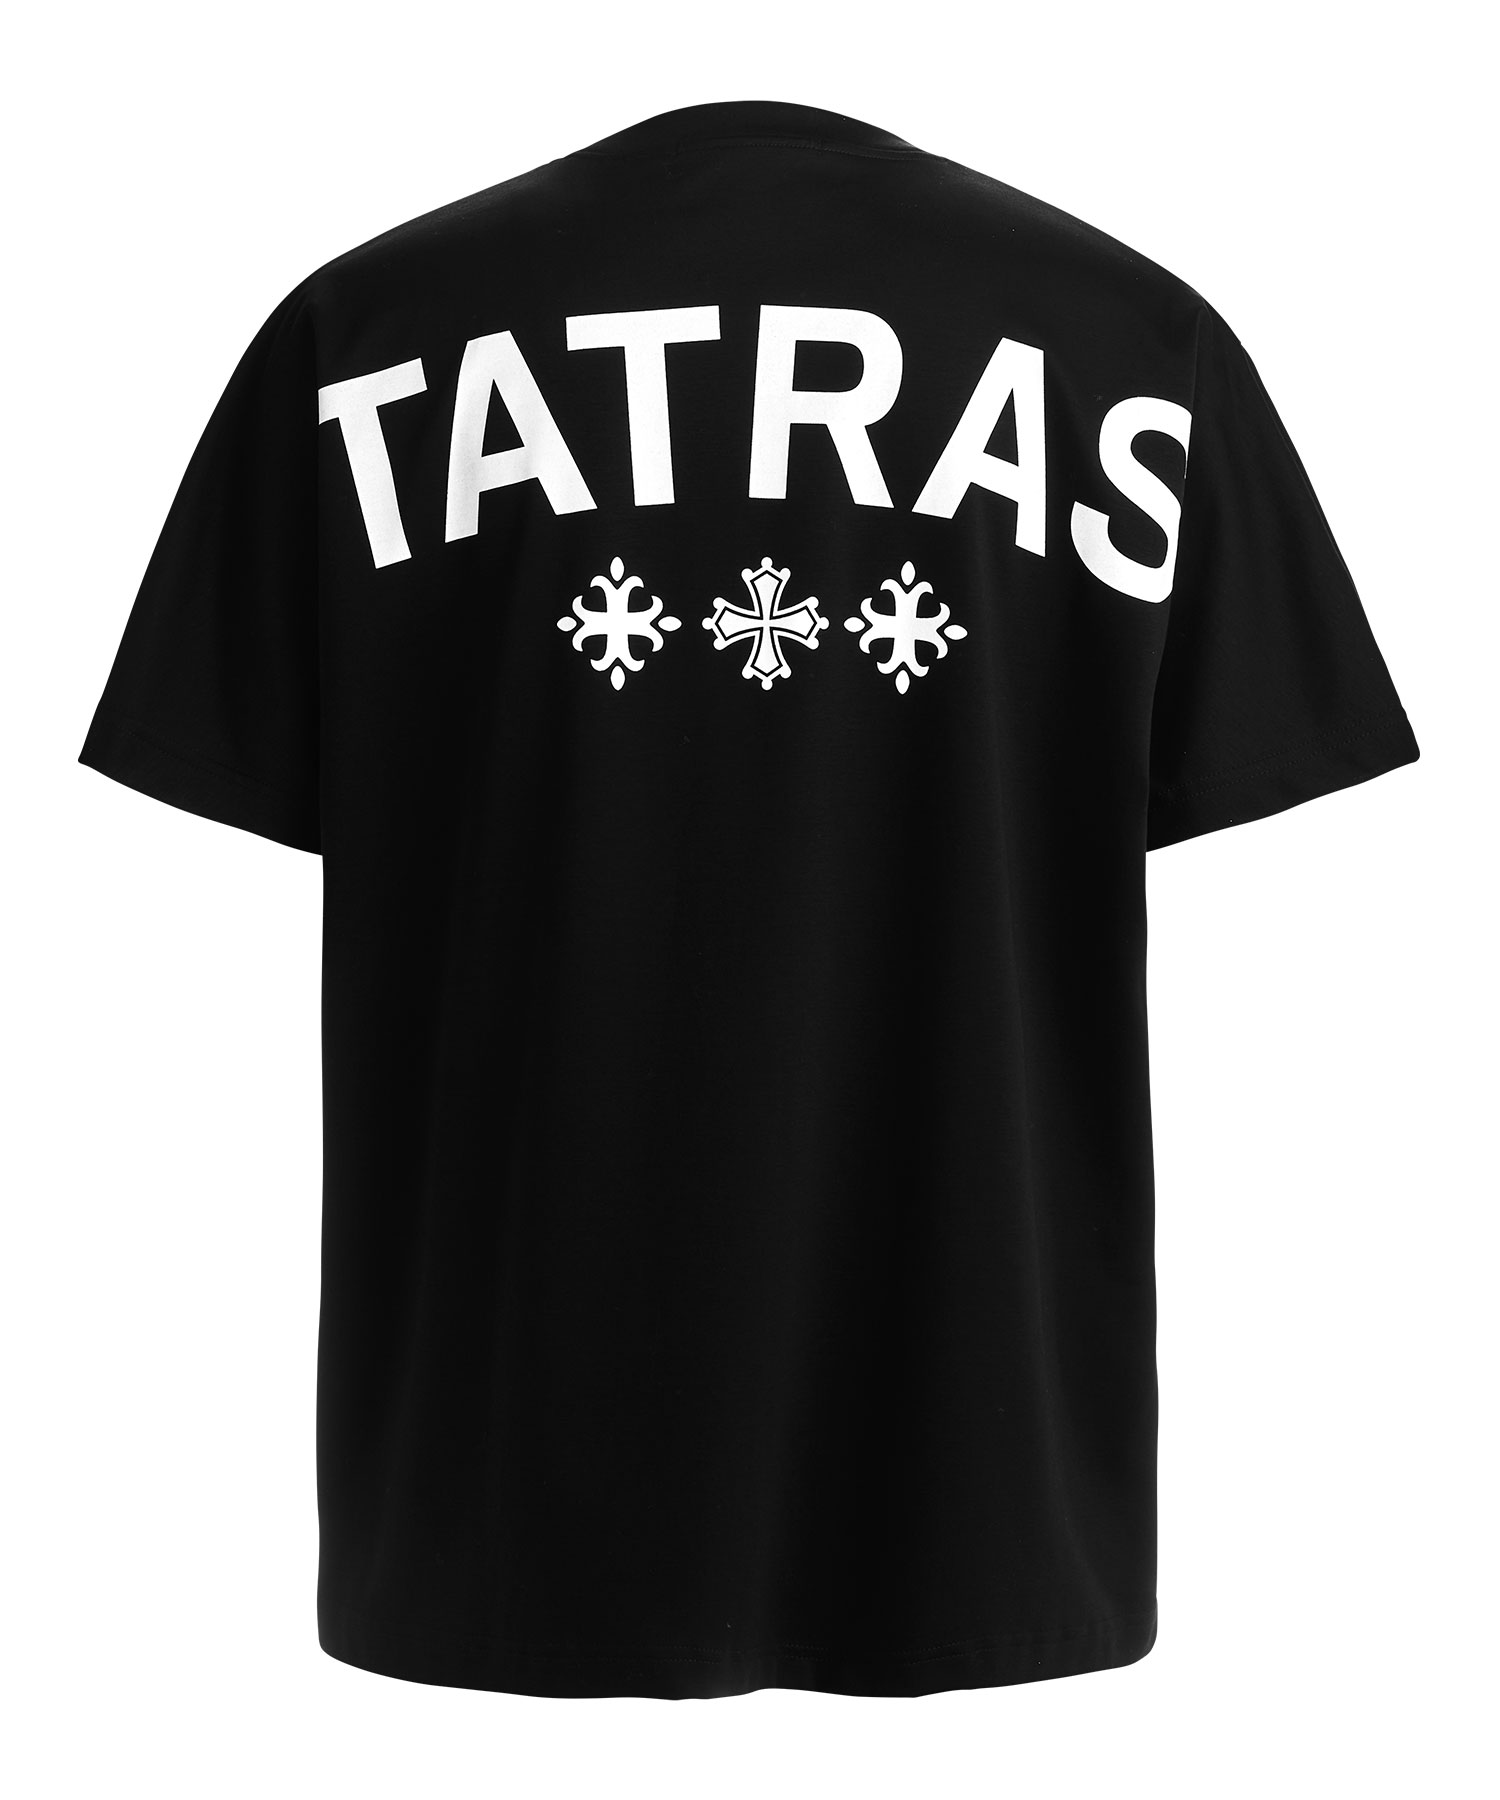 【公式】TATRAS (タトラス) AION アイオン BLACK/01 サイズ:01,02,03,04 Tシャツ・カットソー メンズ